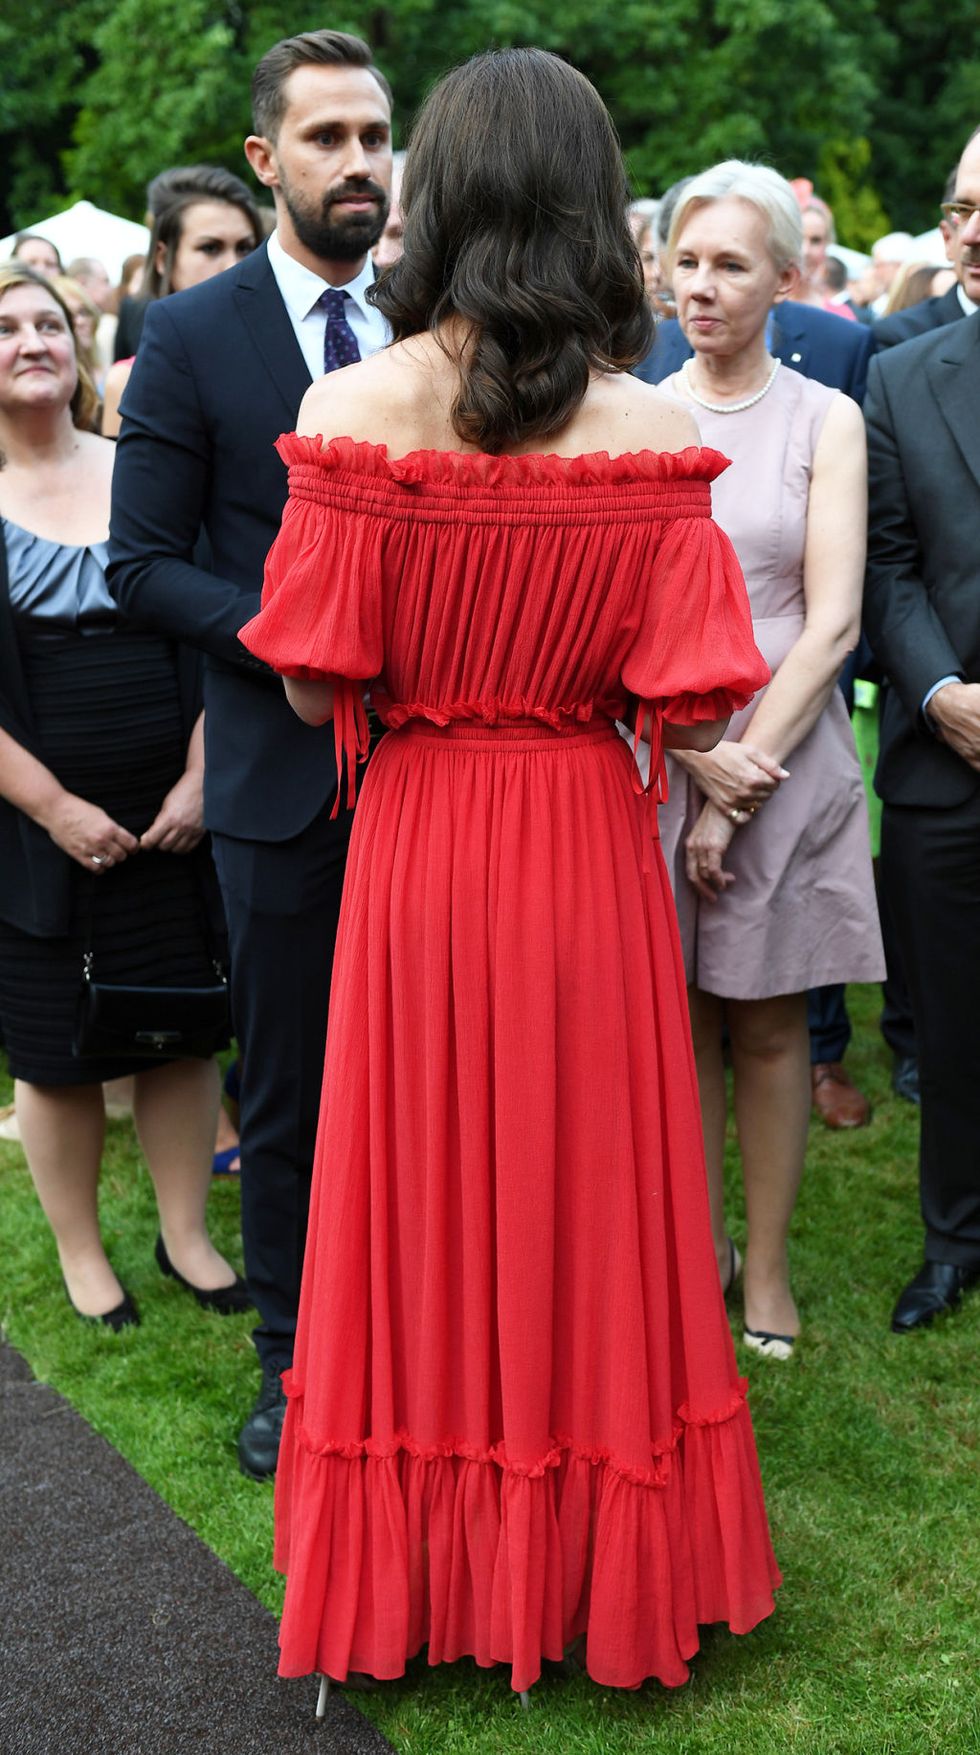 L'abito lungo rosso di Kate Middleton ti riporta a un'eleganza di altri tempi, quella degli anni 70: le spalle scoperte, il nido d'ape e le maniche a sbuffo sono i dettagli da copiare che fanno di questo abito un esempio perfetto da indossare a un evento elegante.